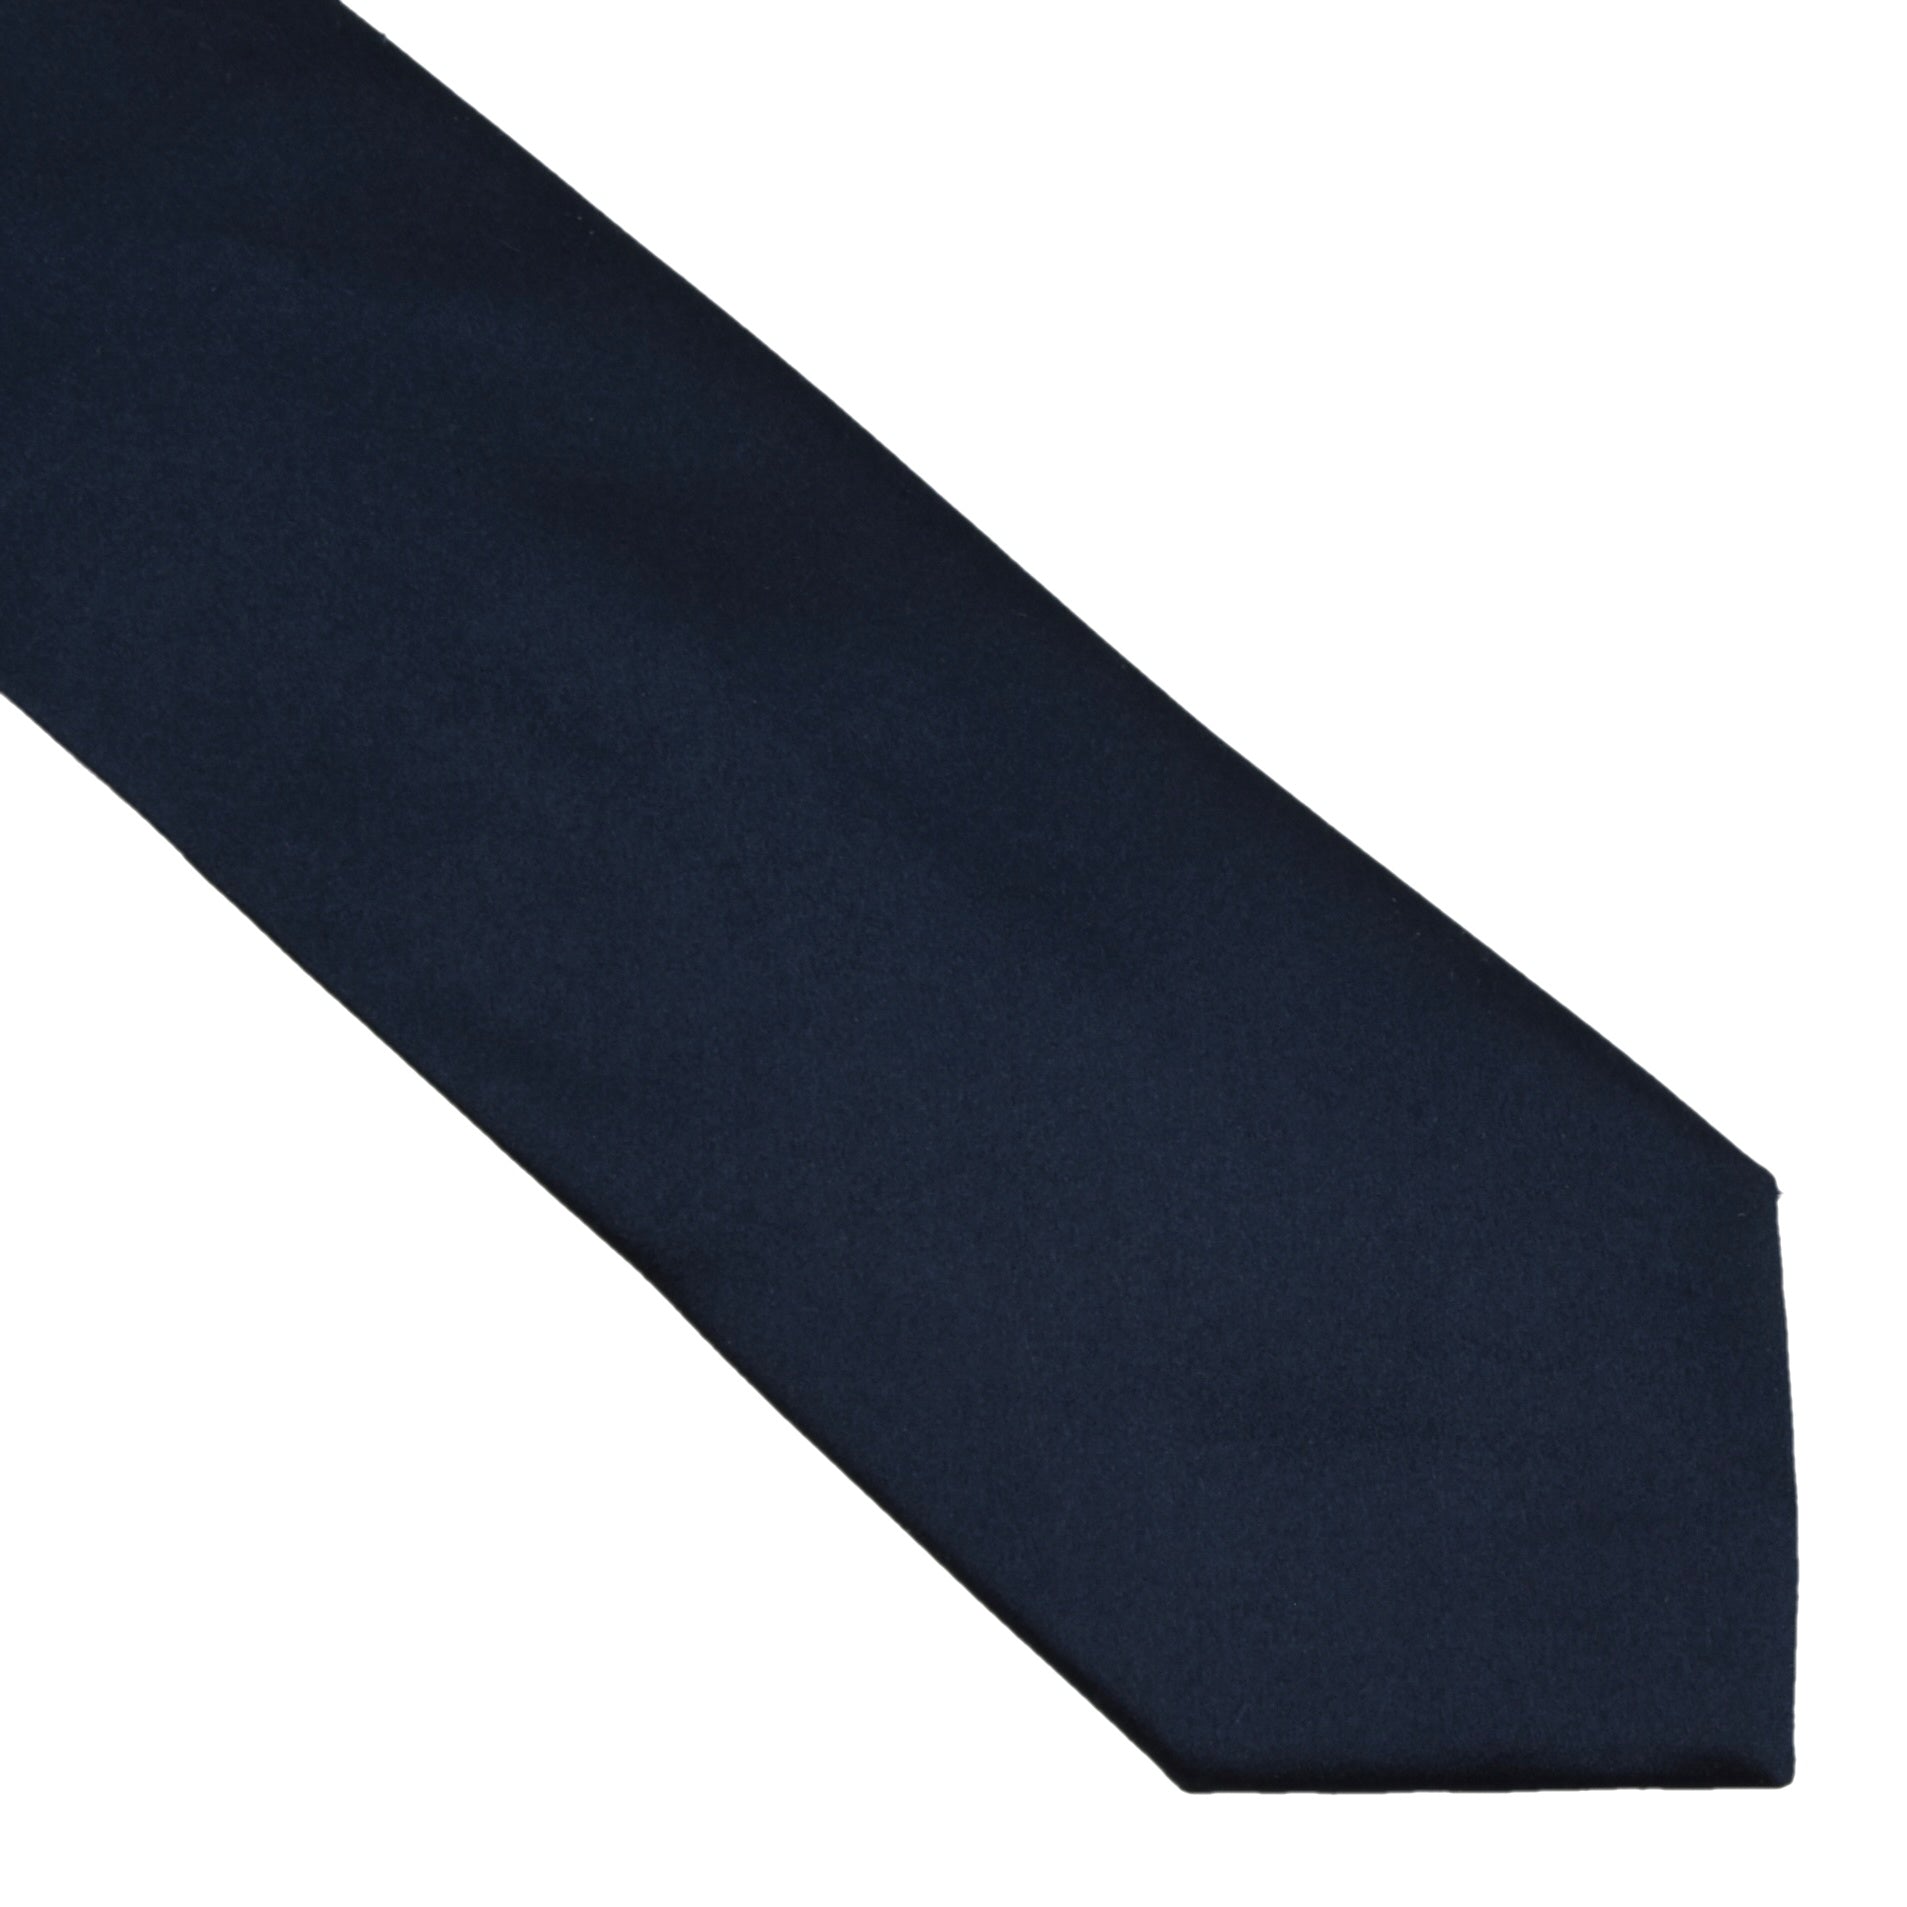 Louis Vuitton Monogram Tie - Blue – Leot James